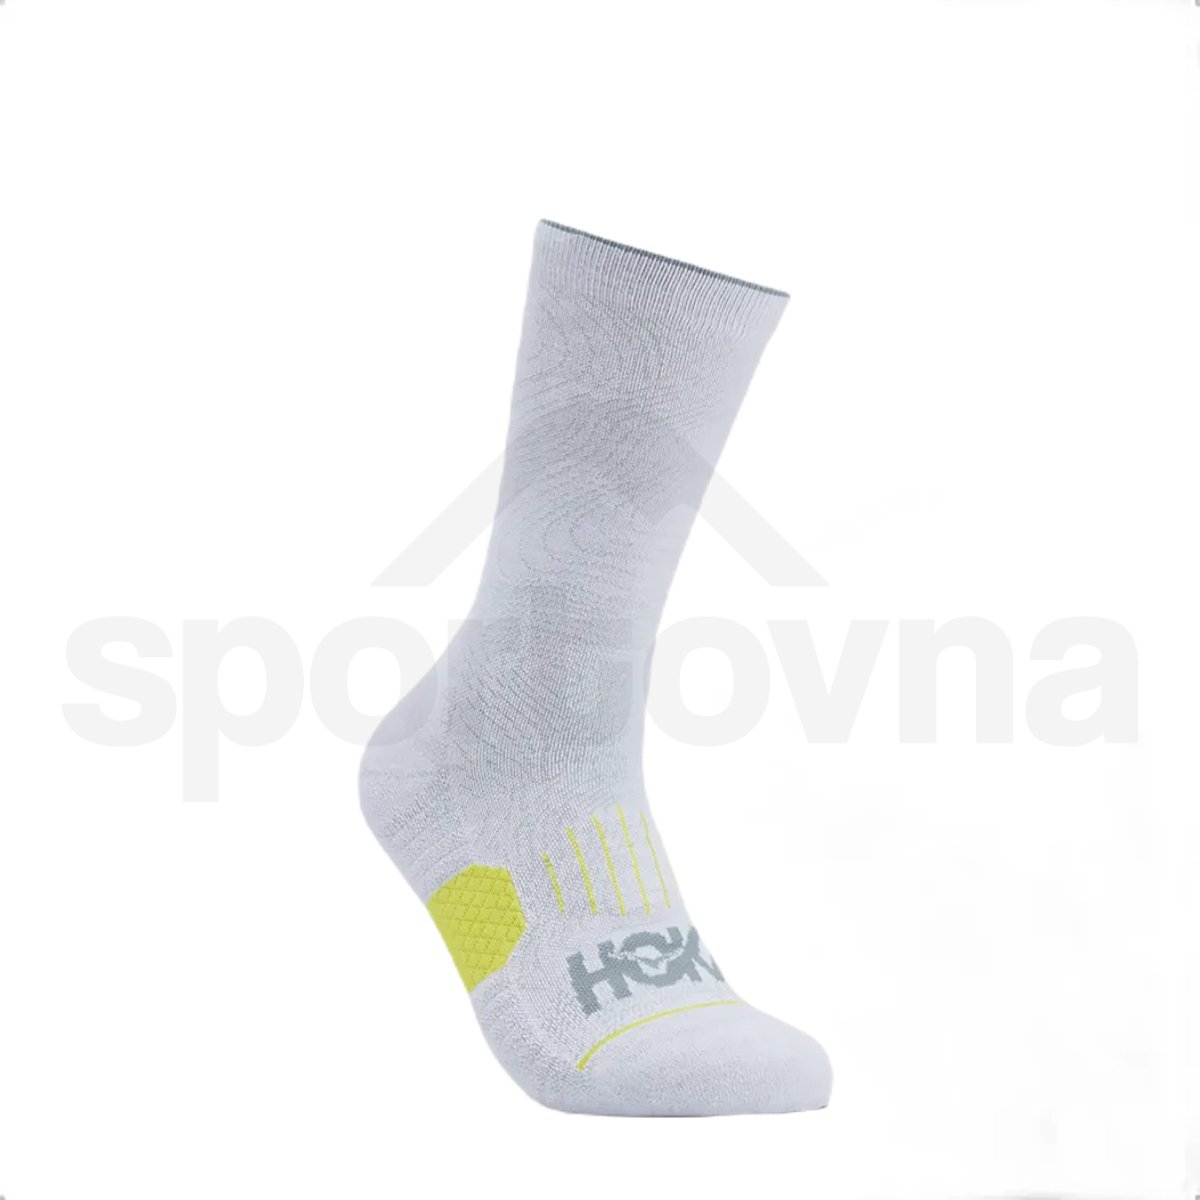 Ponožky Hoka Crew Run Sock 3-Pack U - bílá/černá/šedá